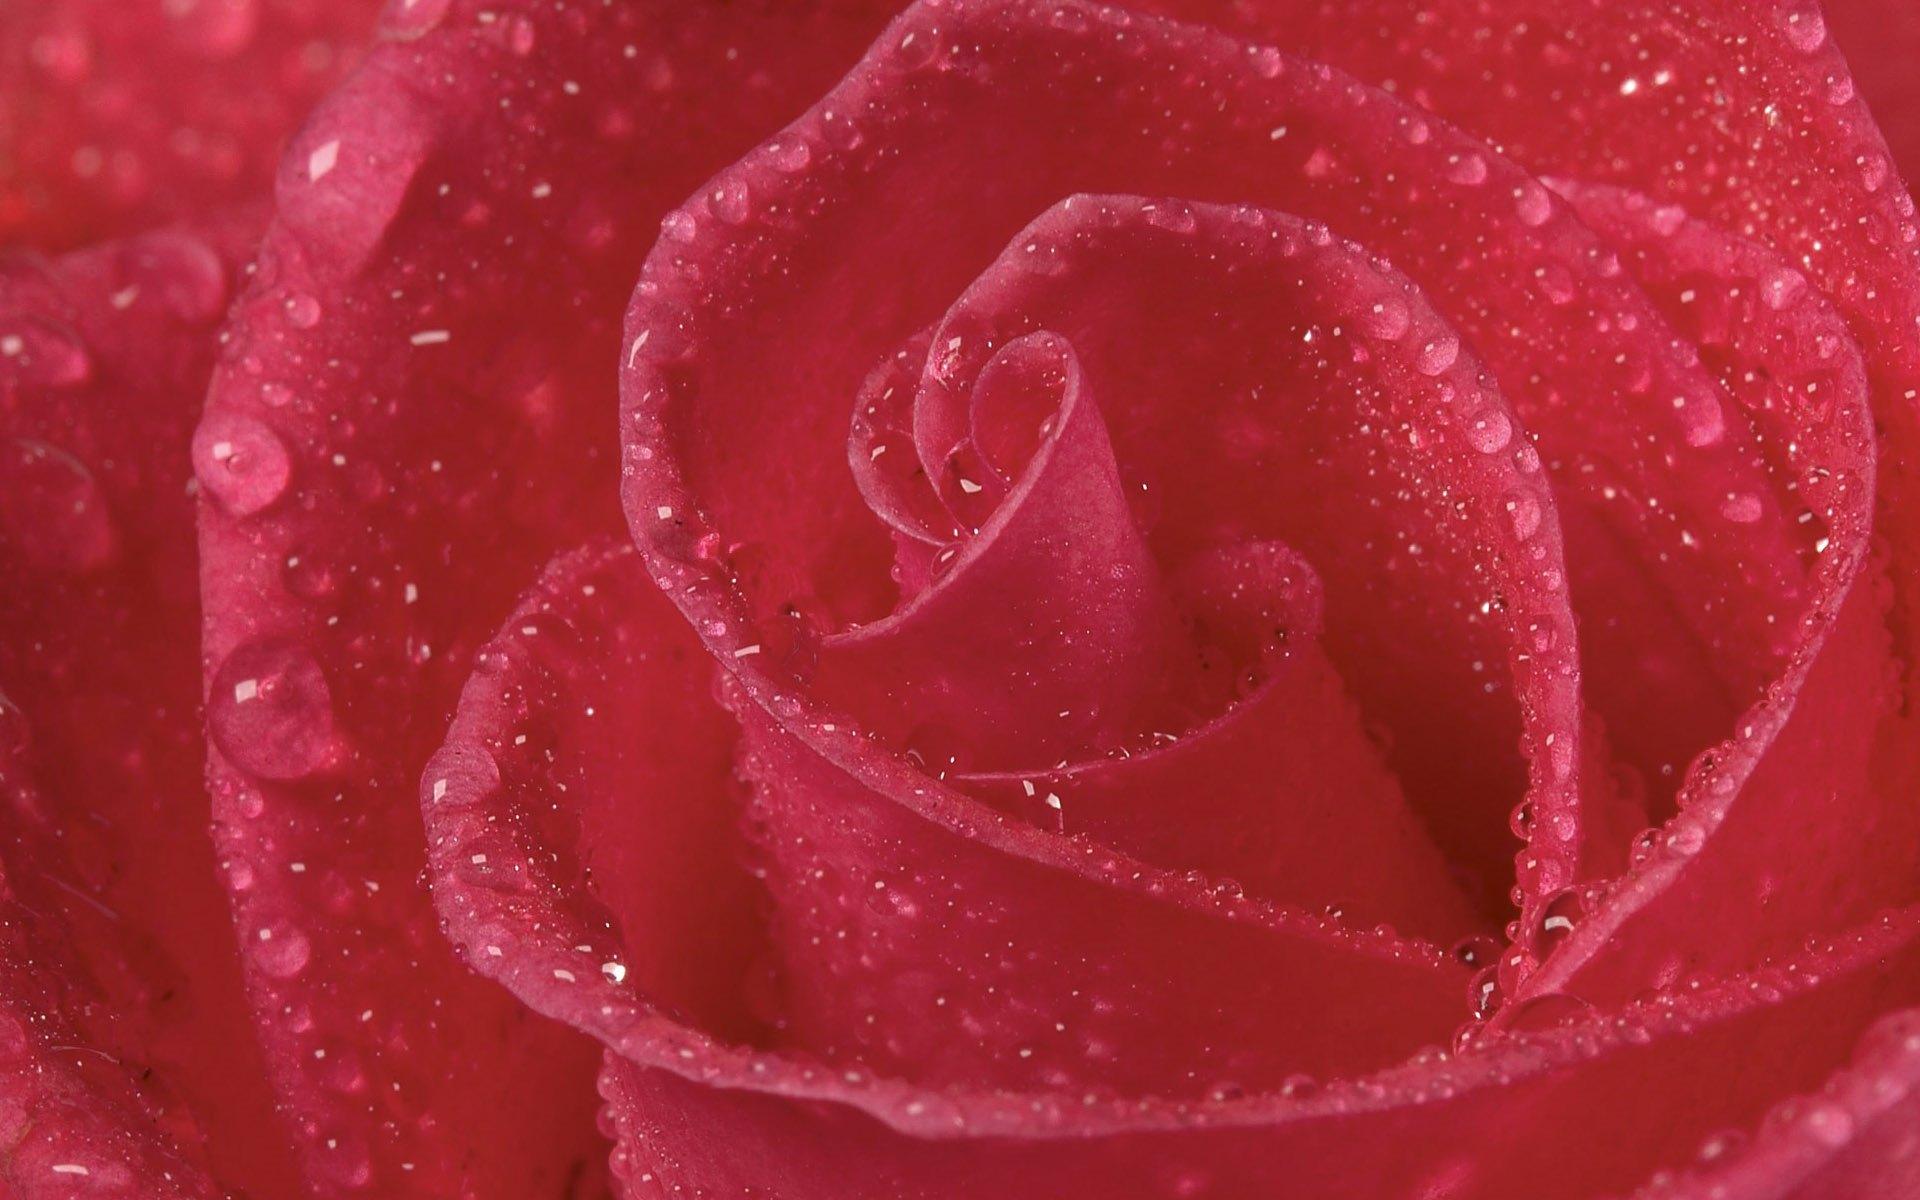 最漂亮玫瑰花图片大全集 - 【花卉百科网】